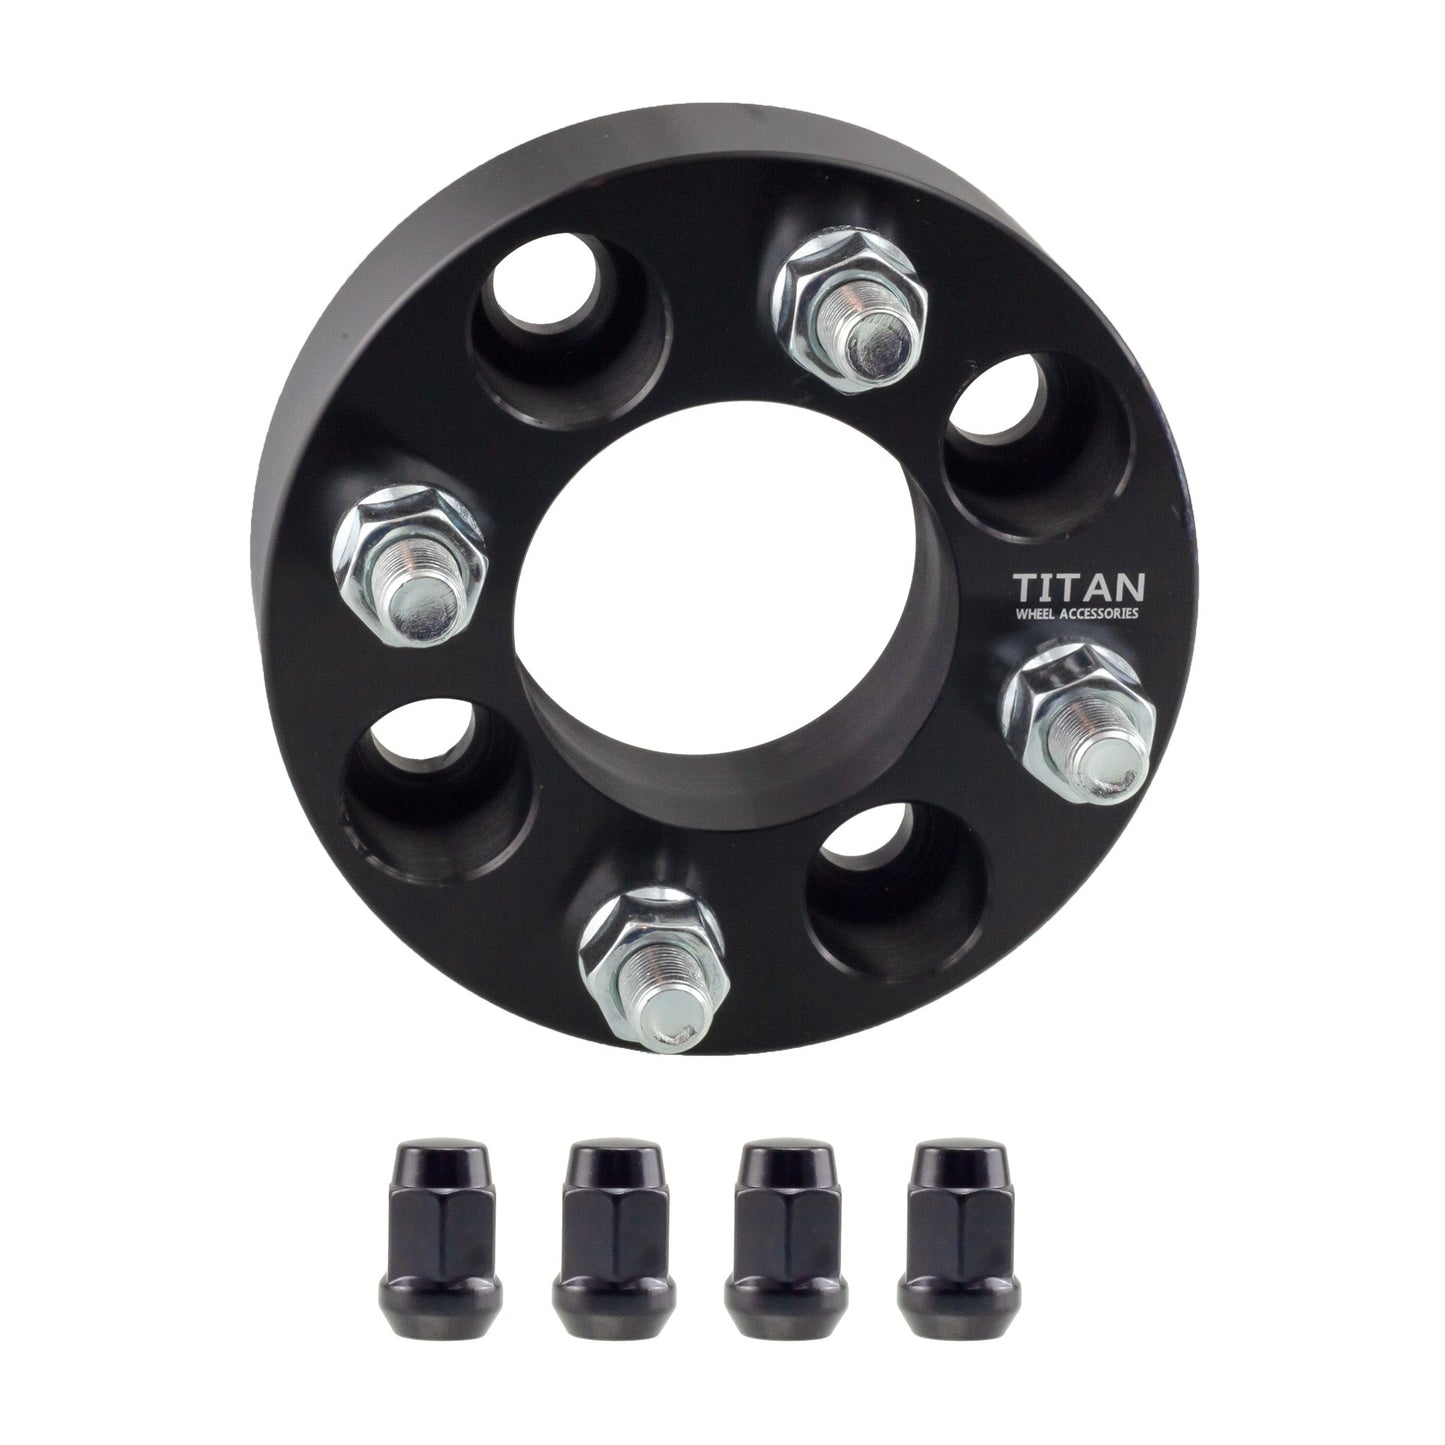 2" (50mm) Titan Wheel Spacers for EZ GO Club Car Golf Carts | 4x4 | 1/2x20 Studs | Titan Wheel Accessories